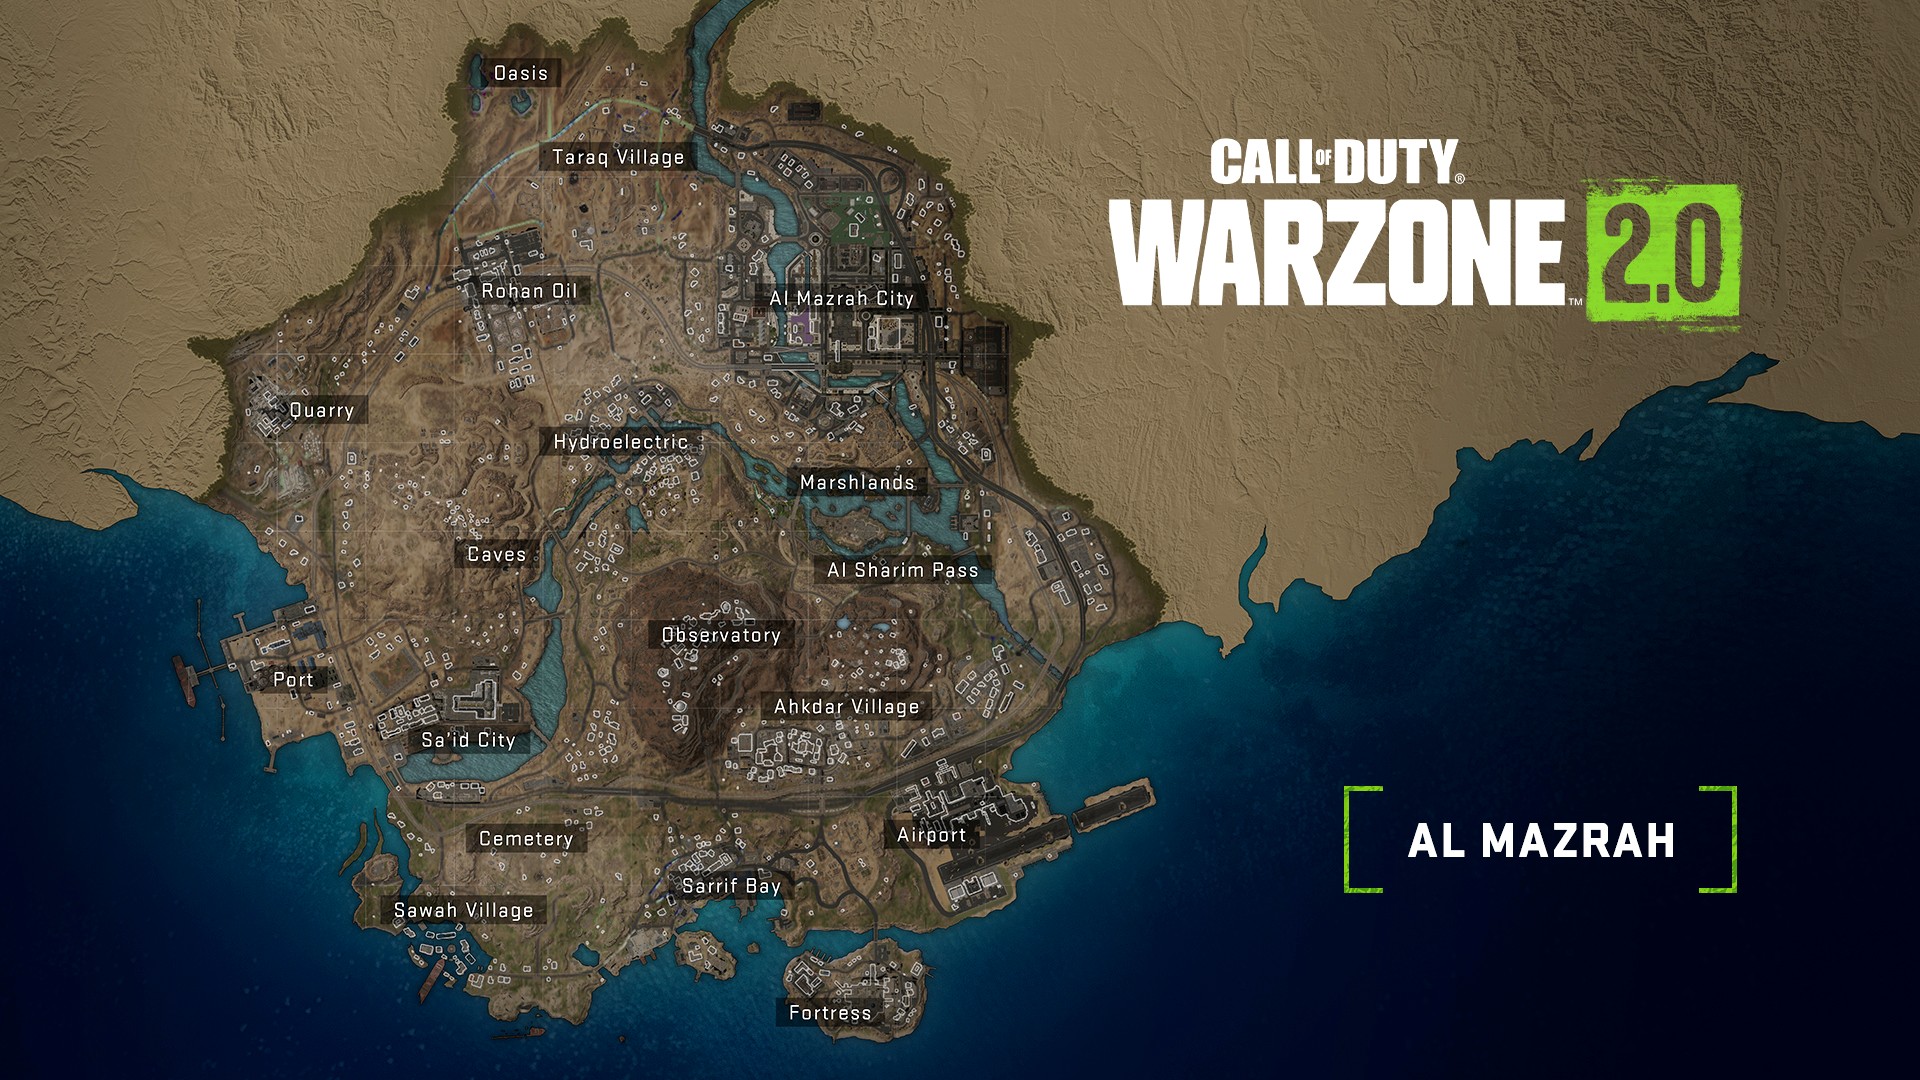 Modern Warfare II (2022) All Multiplayer Maps - Embassy, El Silo, Crown  Raceway - DigitalTQ